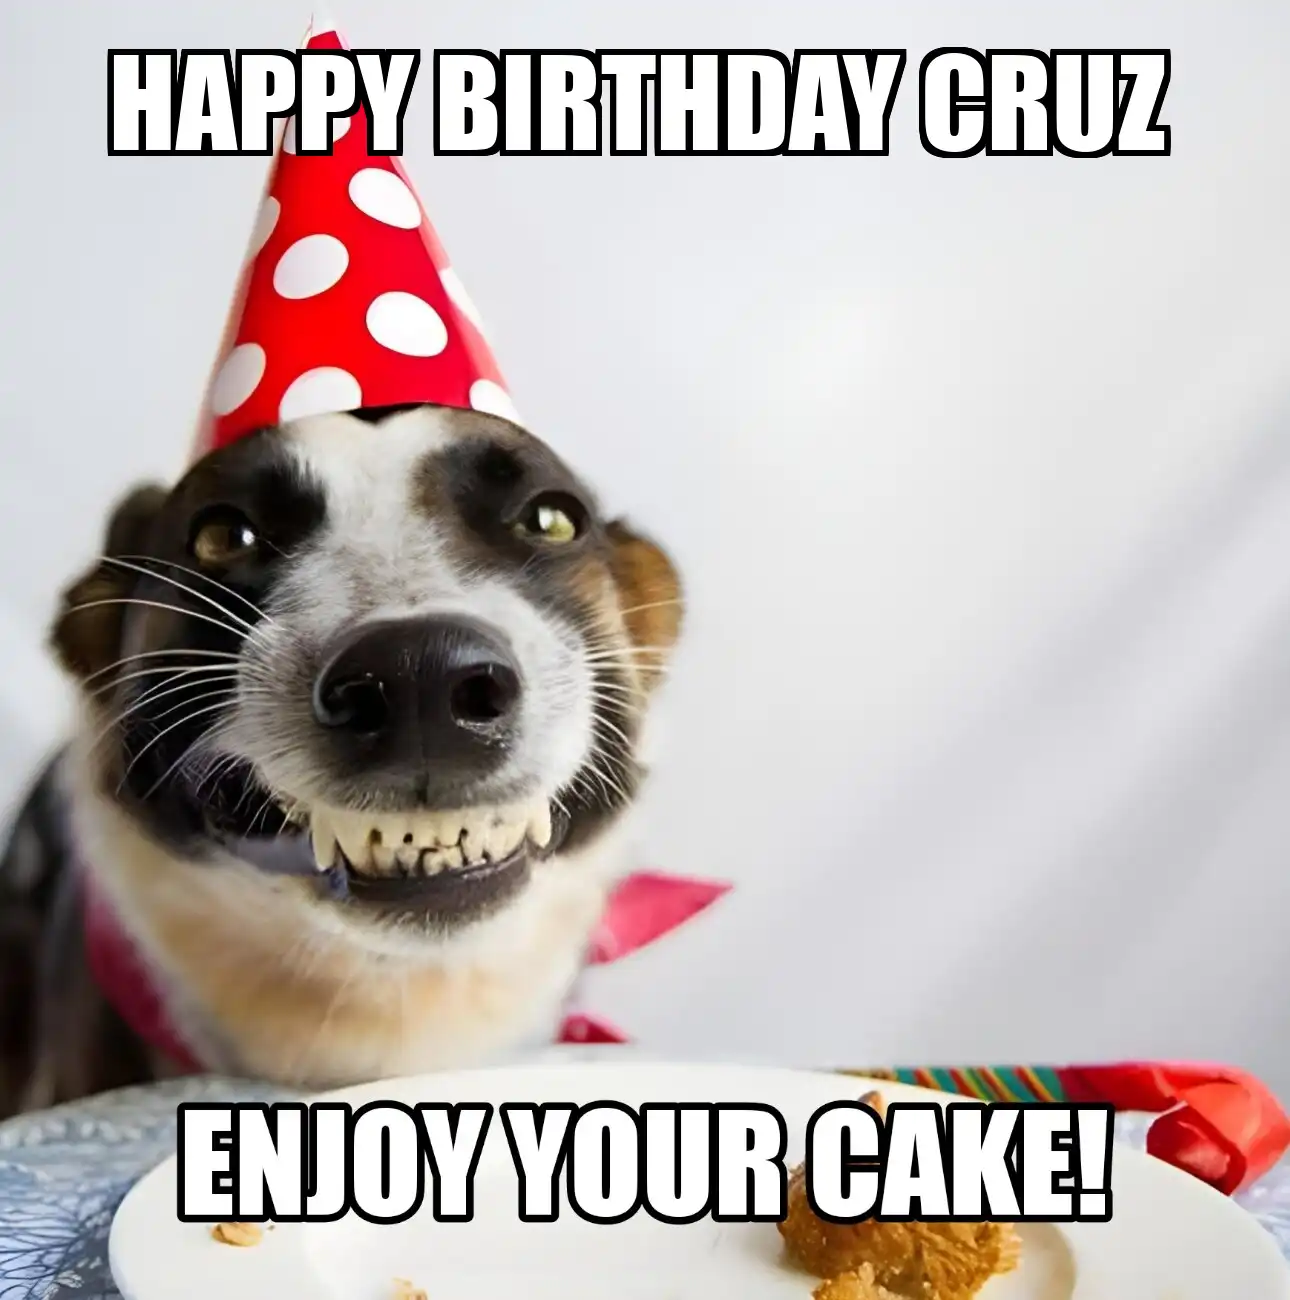 Happy Birthday Cruz Enjoy Your Cake Dog Meme